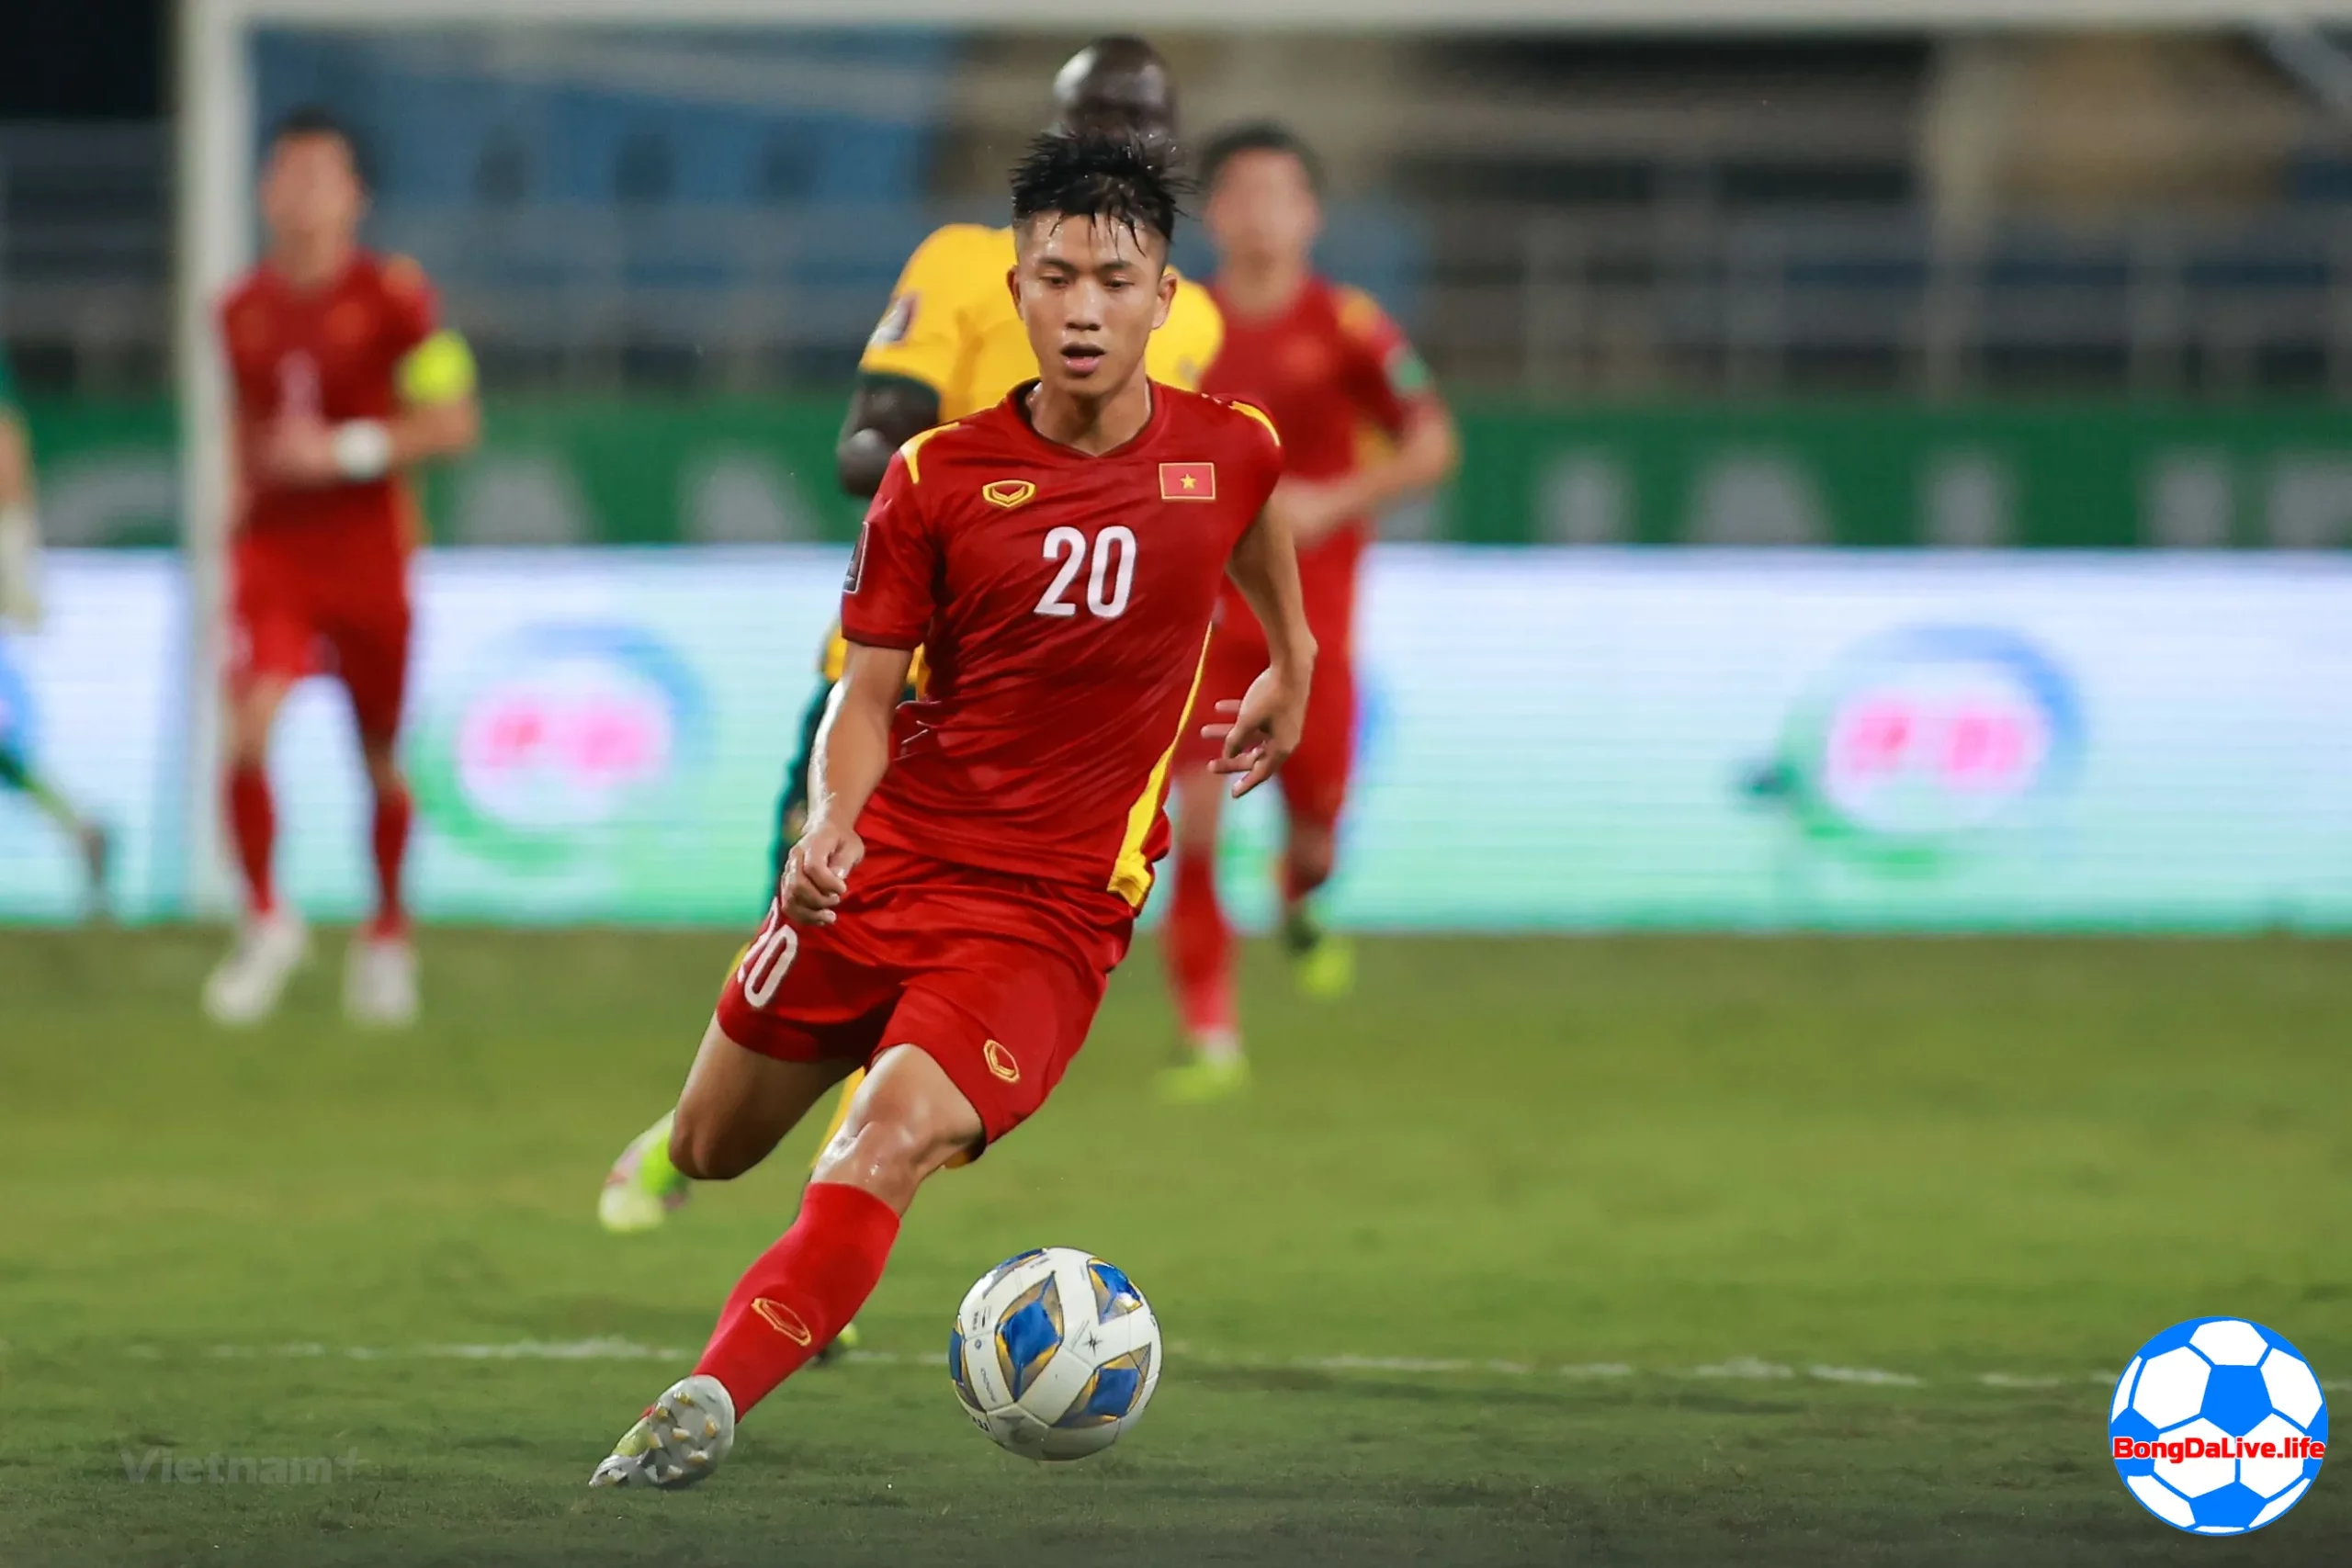 Ảnh cầu thủ Phan Văn Đức đang thi đấu trong màu áo đội tuyển Quốc Gia Việt Nam